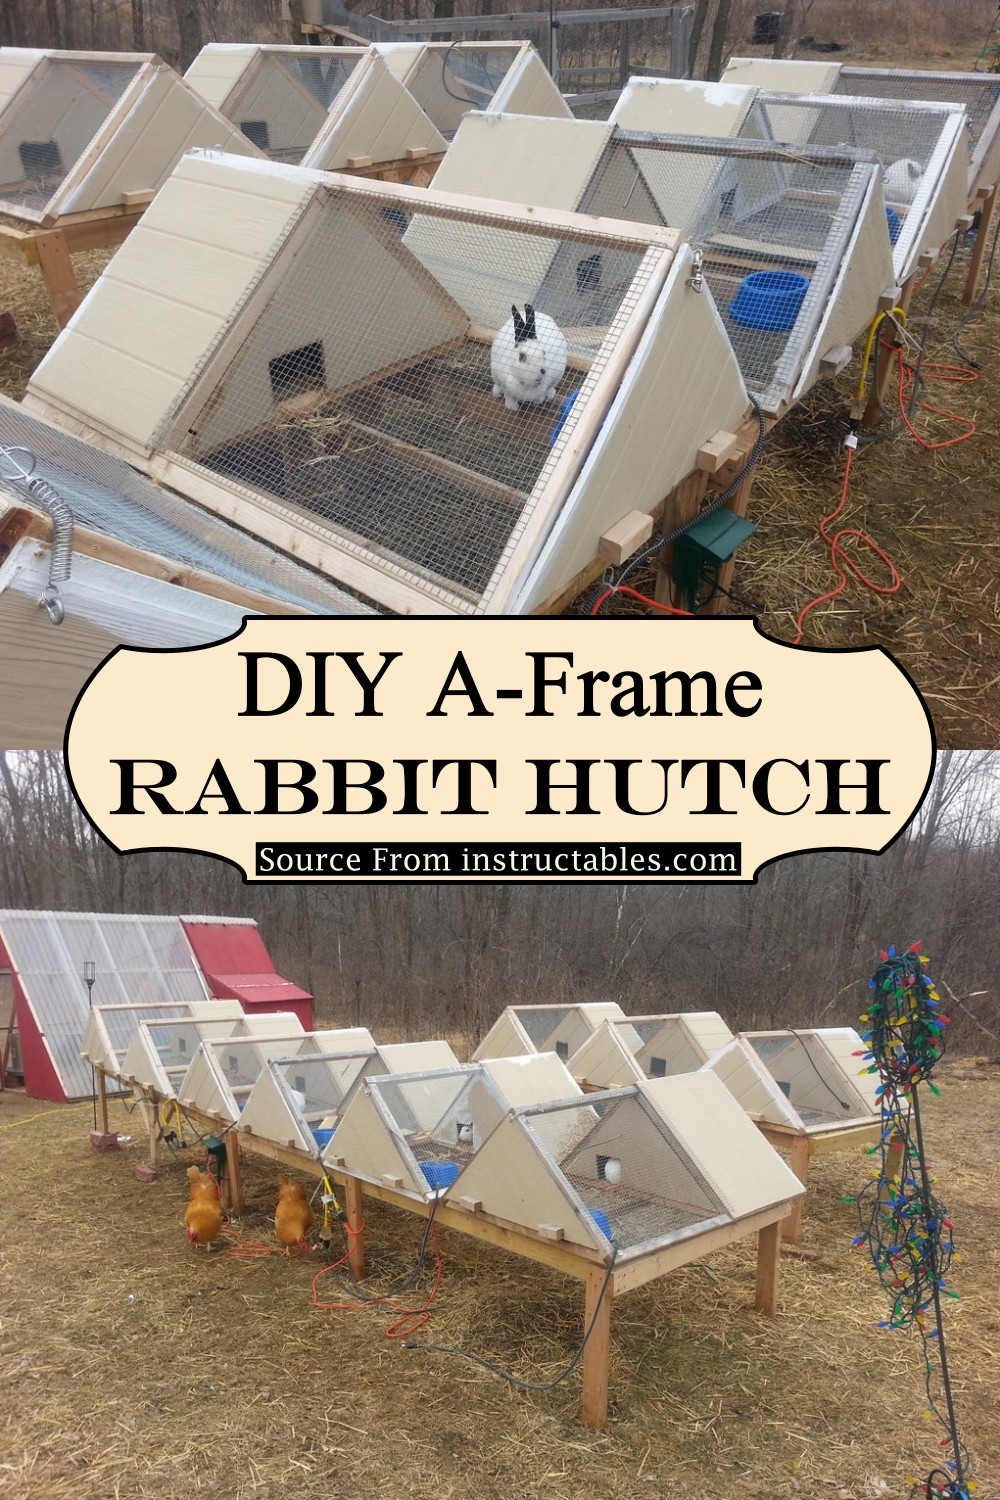 DIY A-Frame Rabbit Hutch